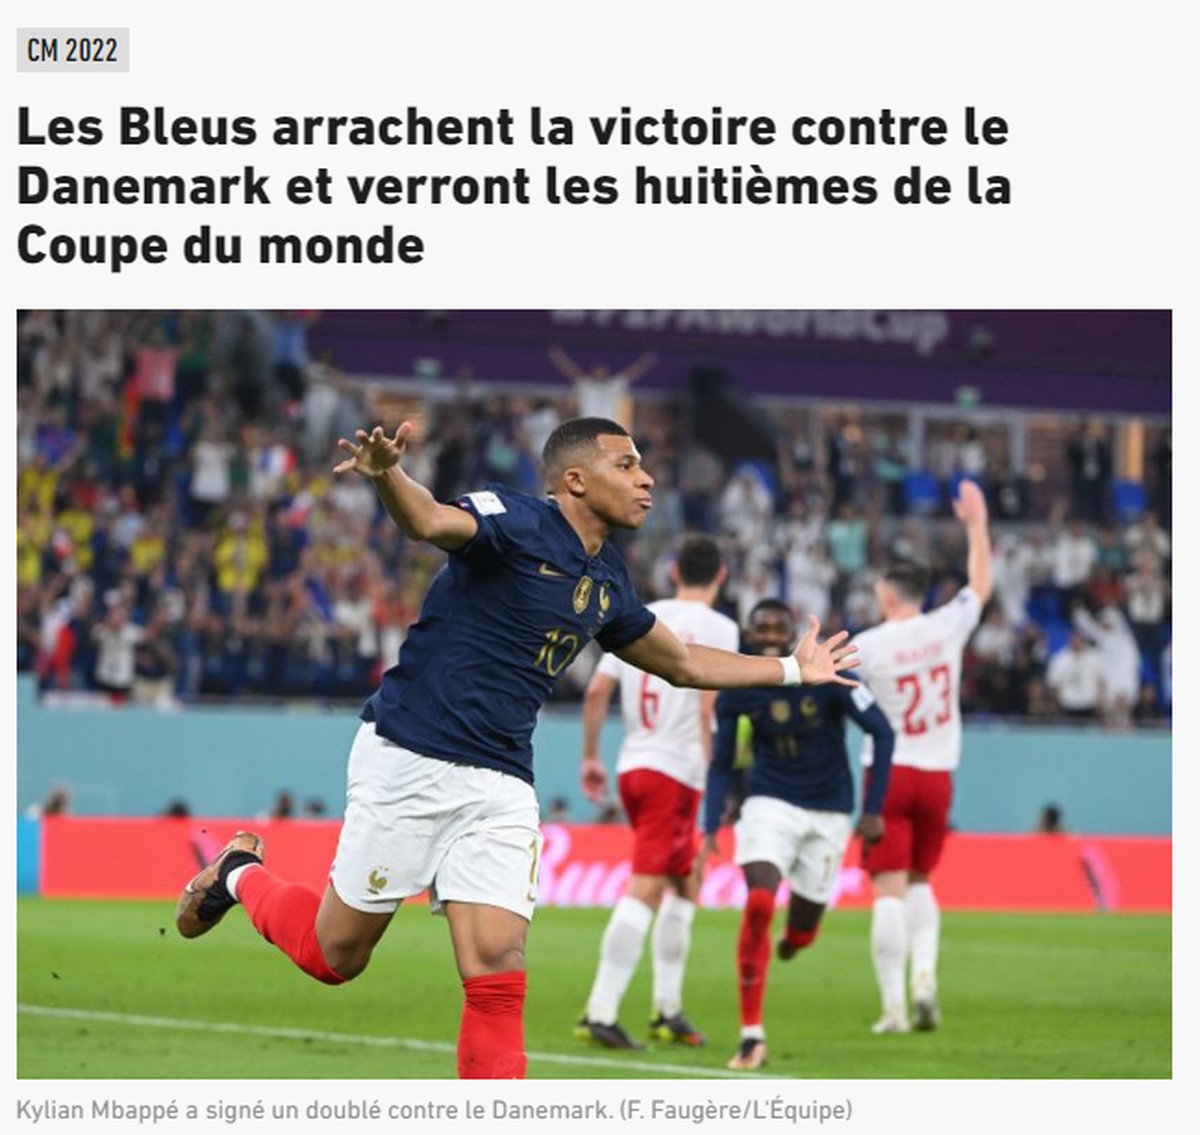 Les journaux français soulignent la performance de Mbappé lors de la victoire de la France contre le Danemark |  Qatar 2022